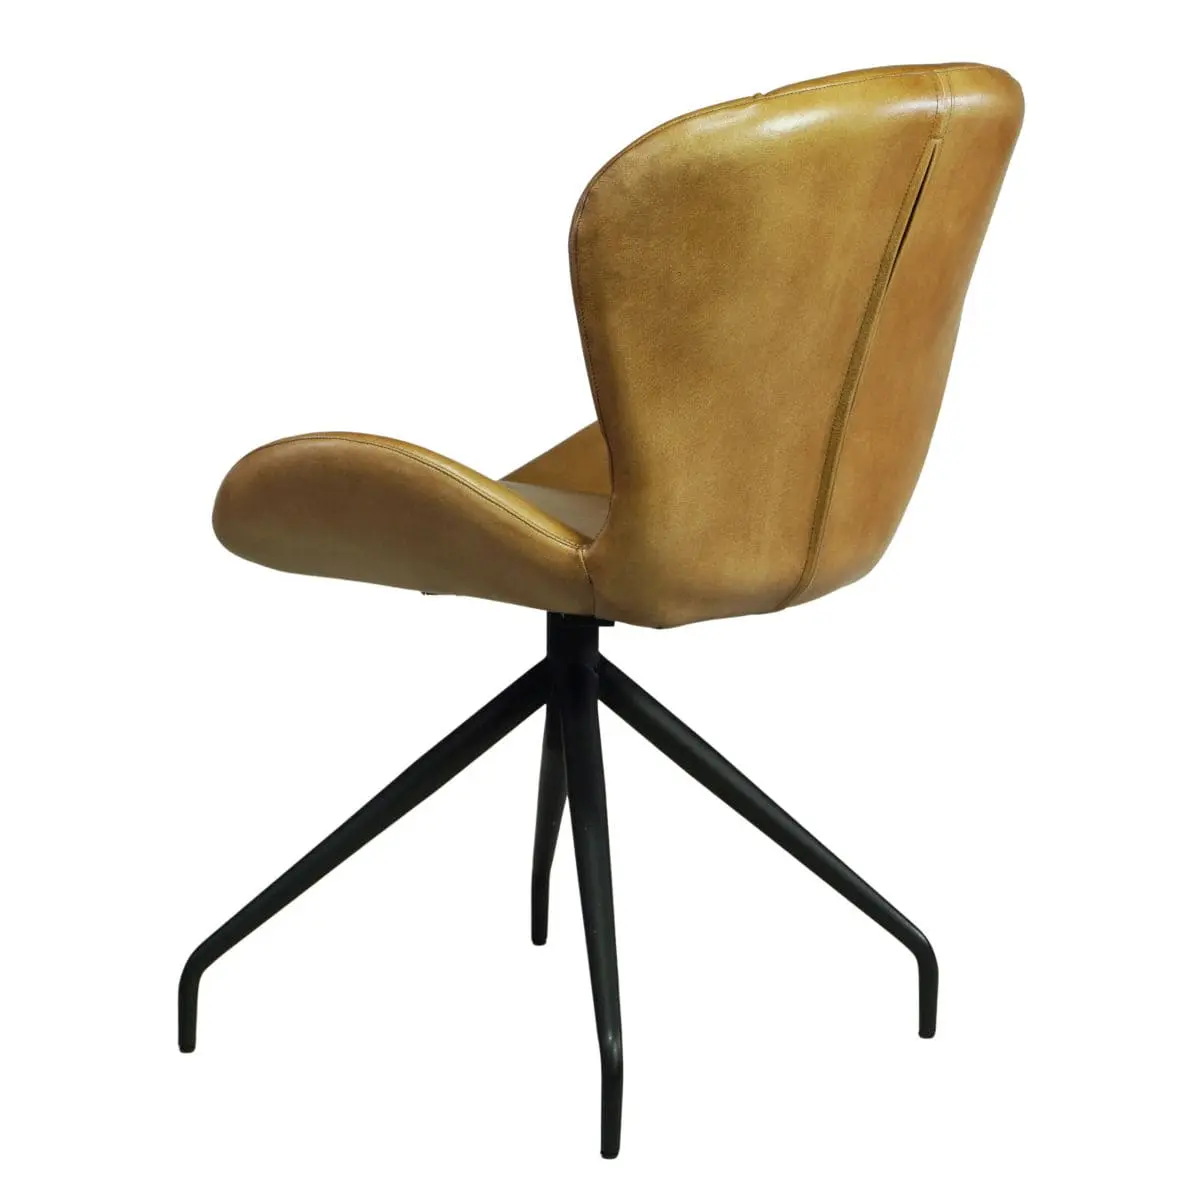 Brauner Buffelleder Stuhl gepolstert Industrial Vintage Stil schwarzes Metallgestell